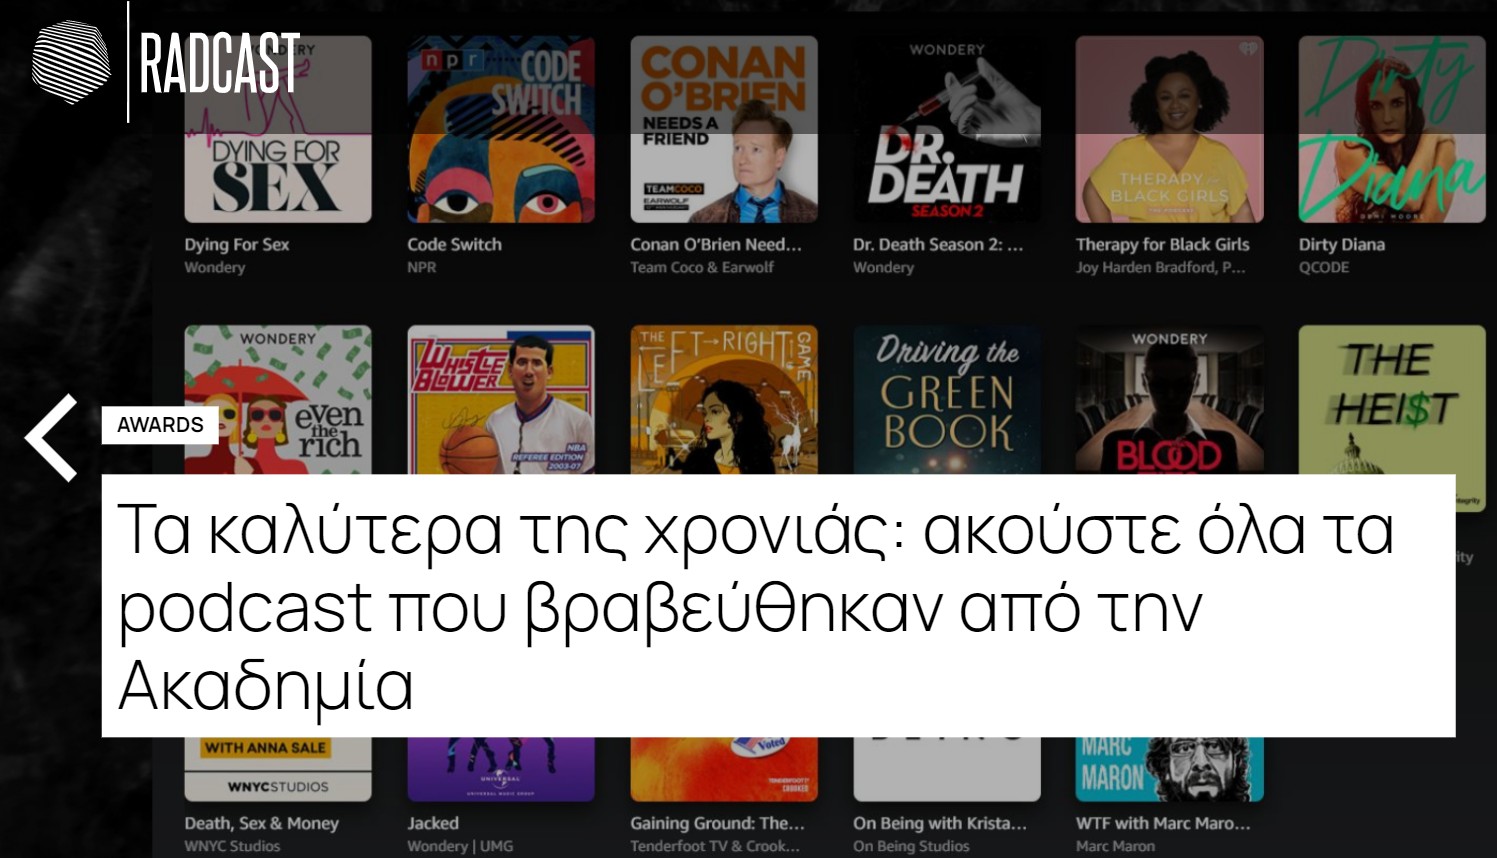 Νέο πλατφόρμα για podcasts, το Radcast.gr